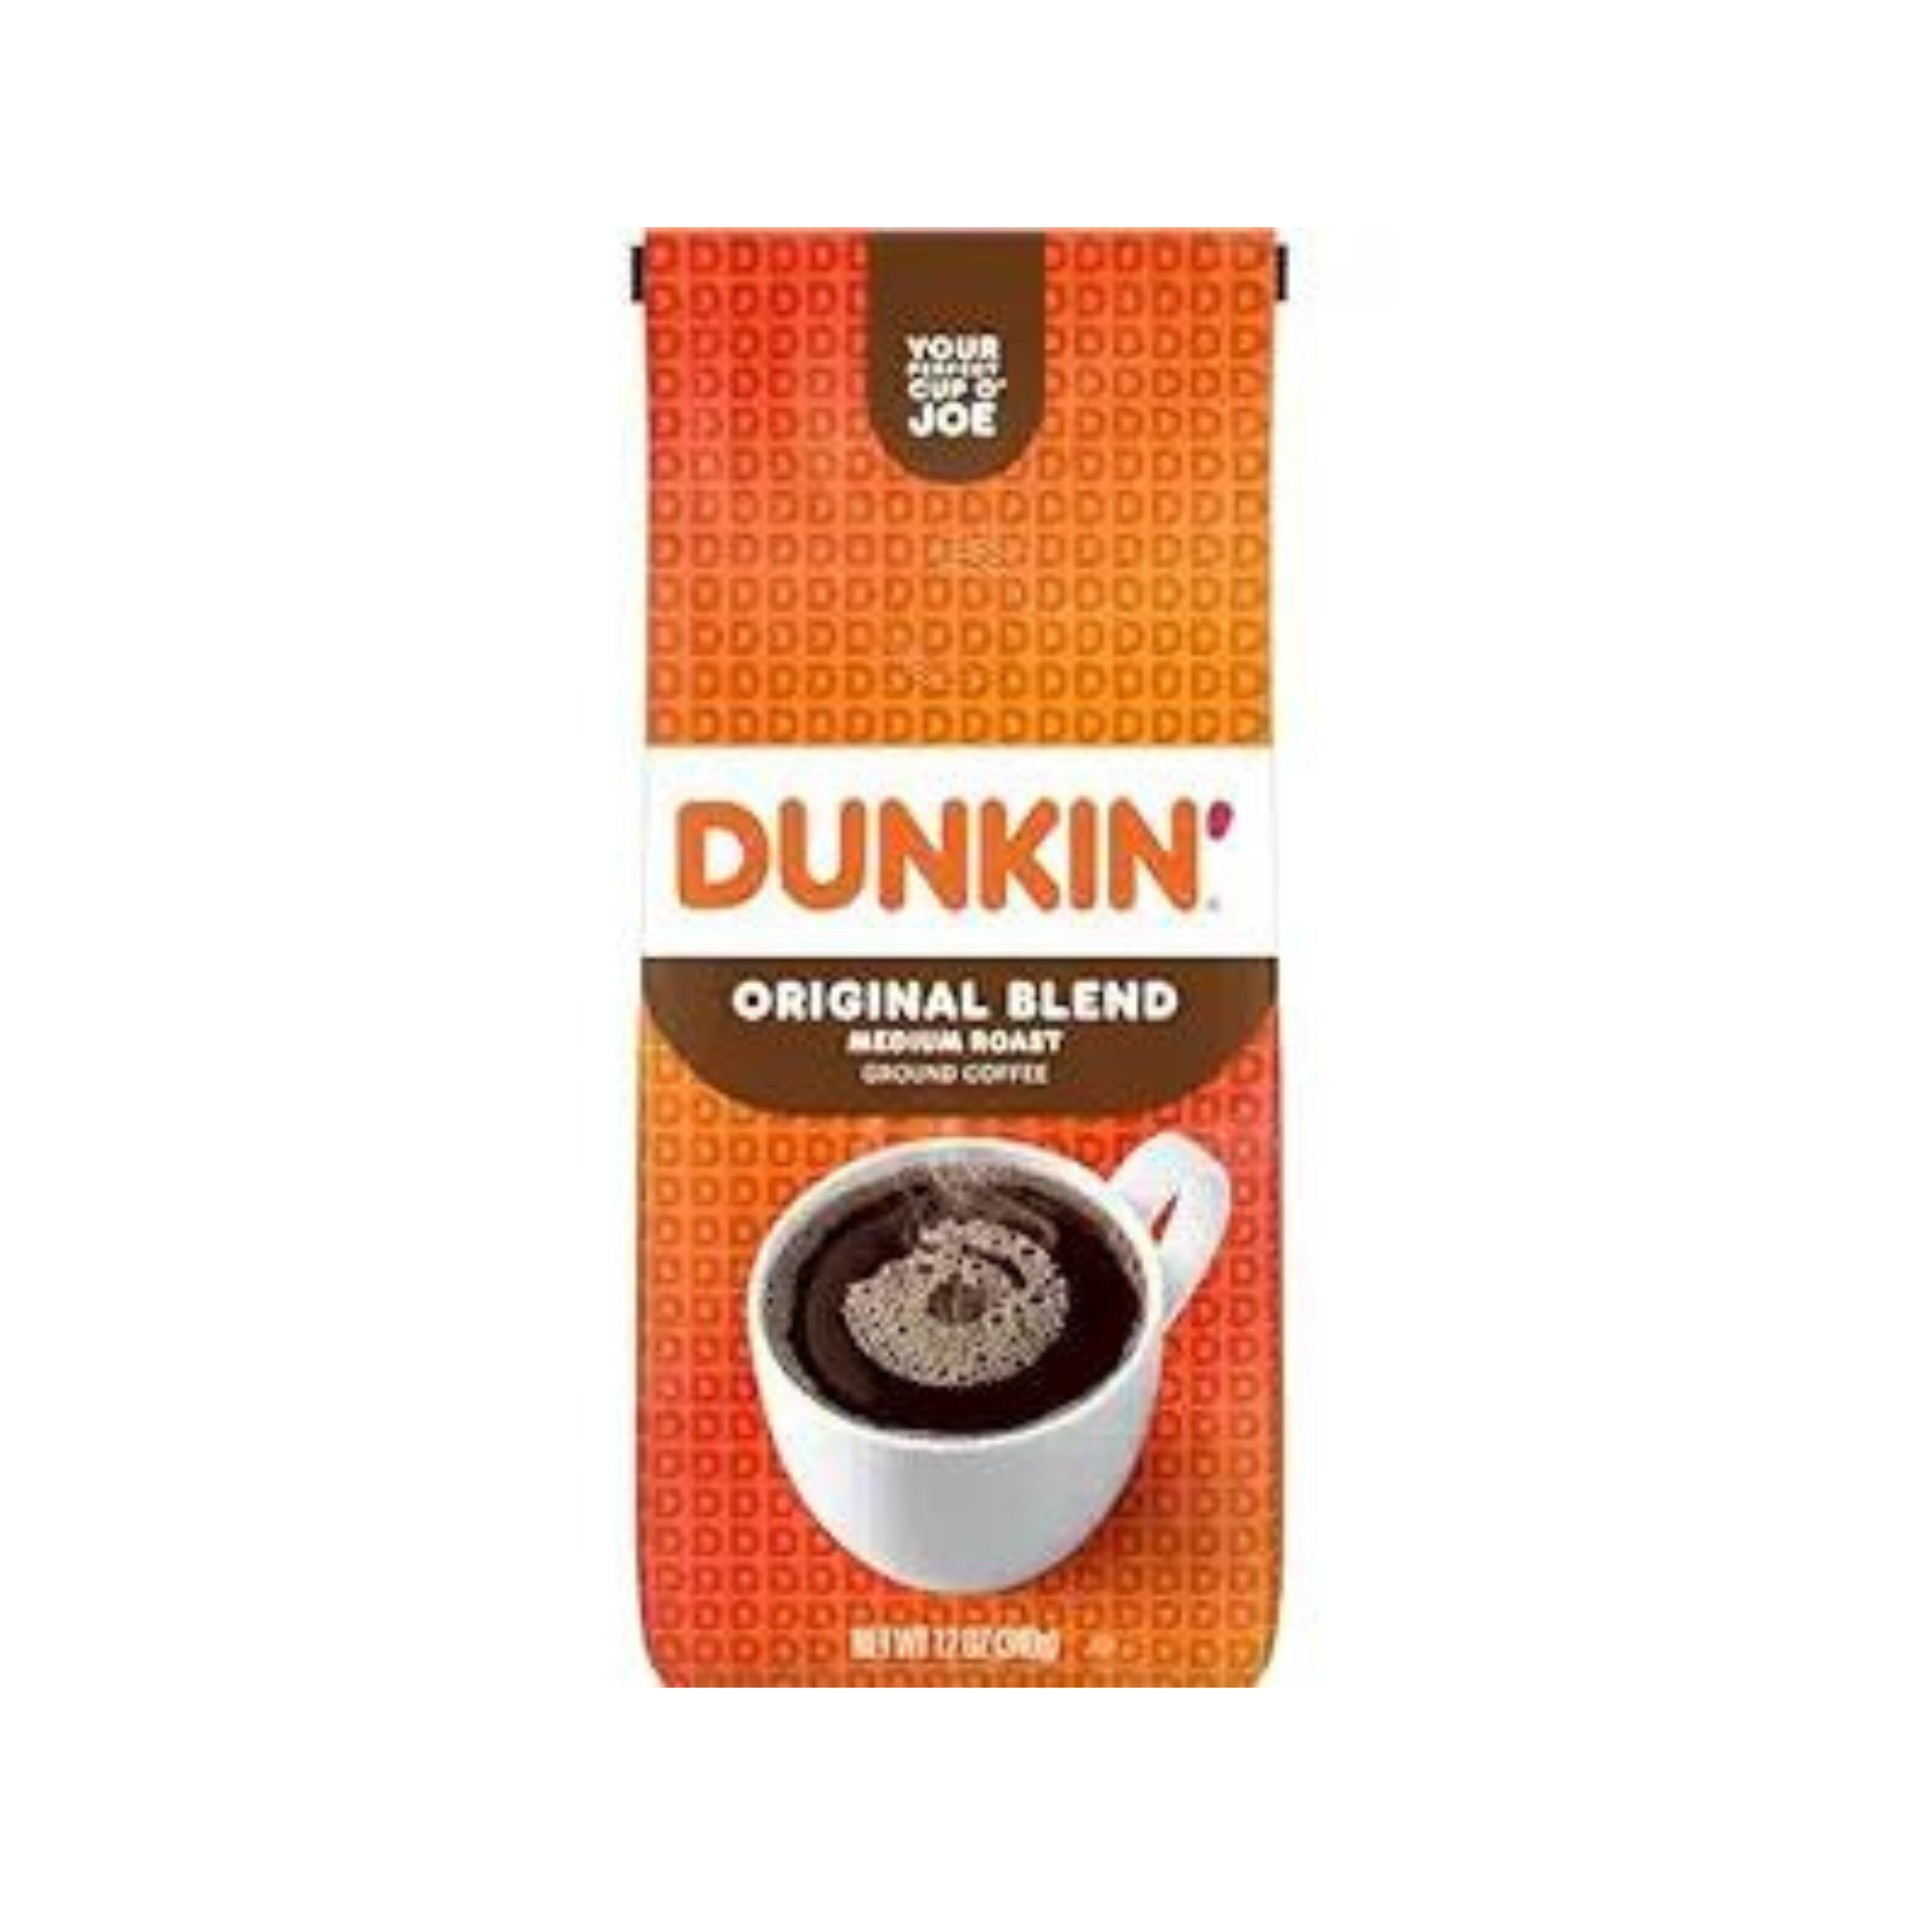 Dunkin' Original Blend Medium Roast Ground Coffee, 12 Ounce